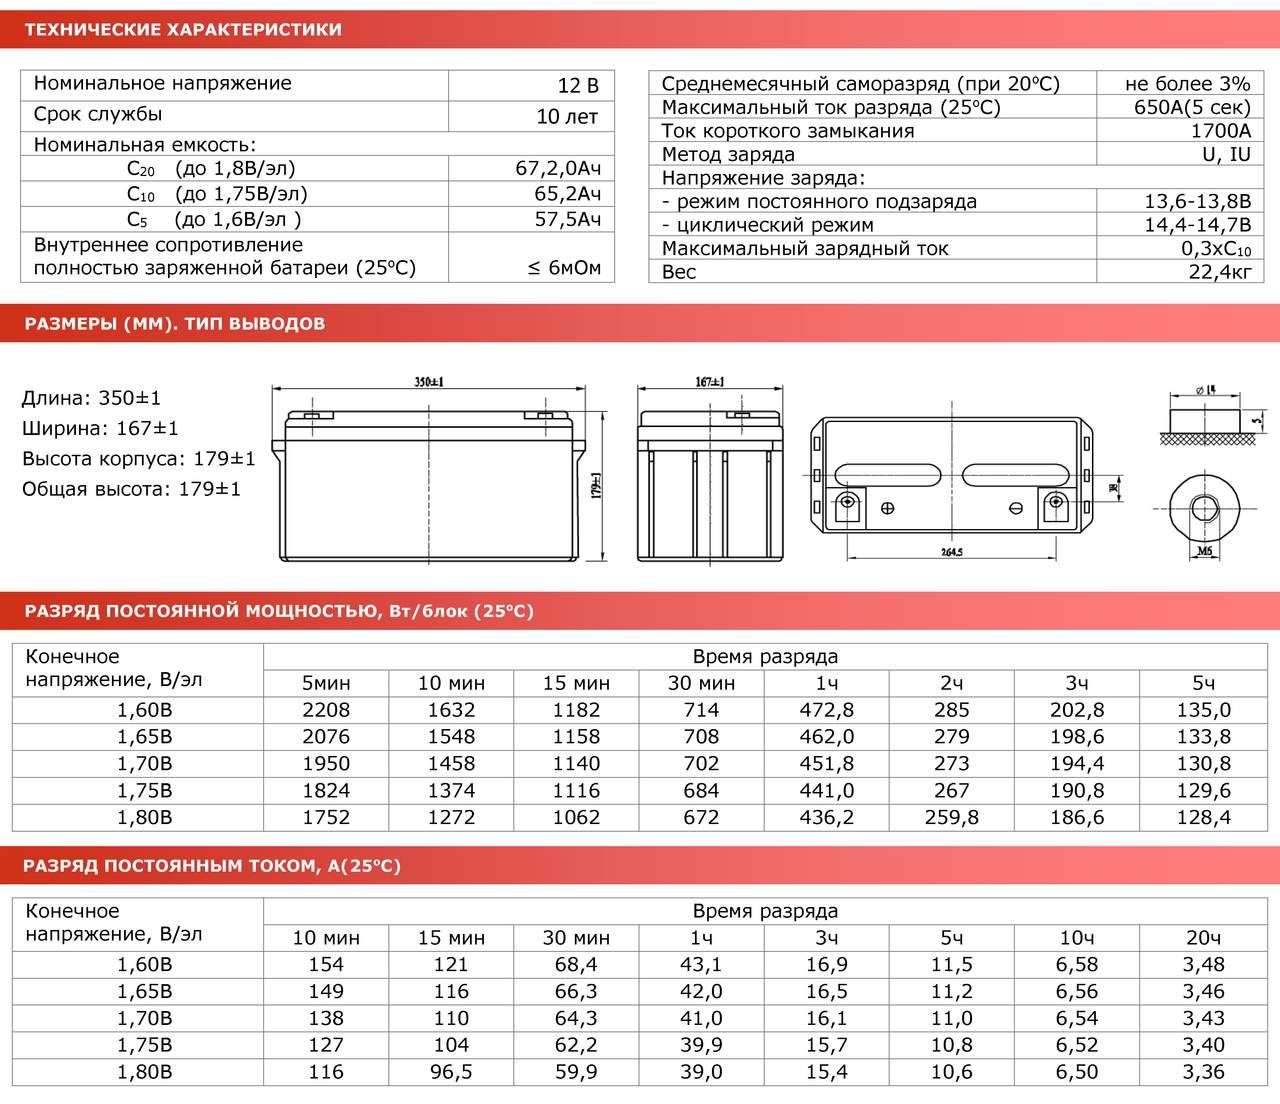 Маркировка керамических конденсаторов – таблицы с расшифровками обозначений